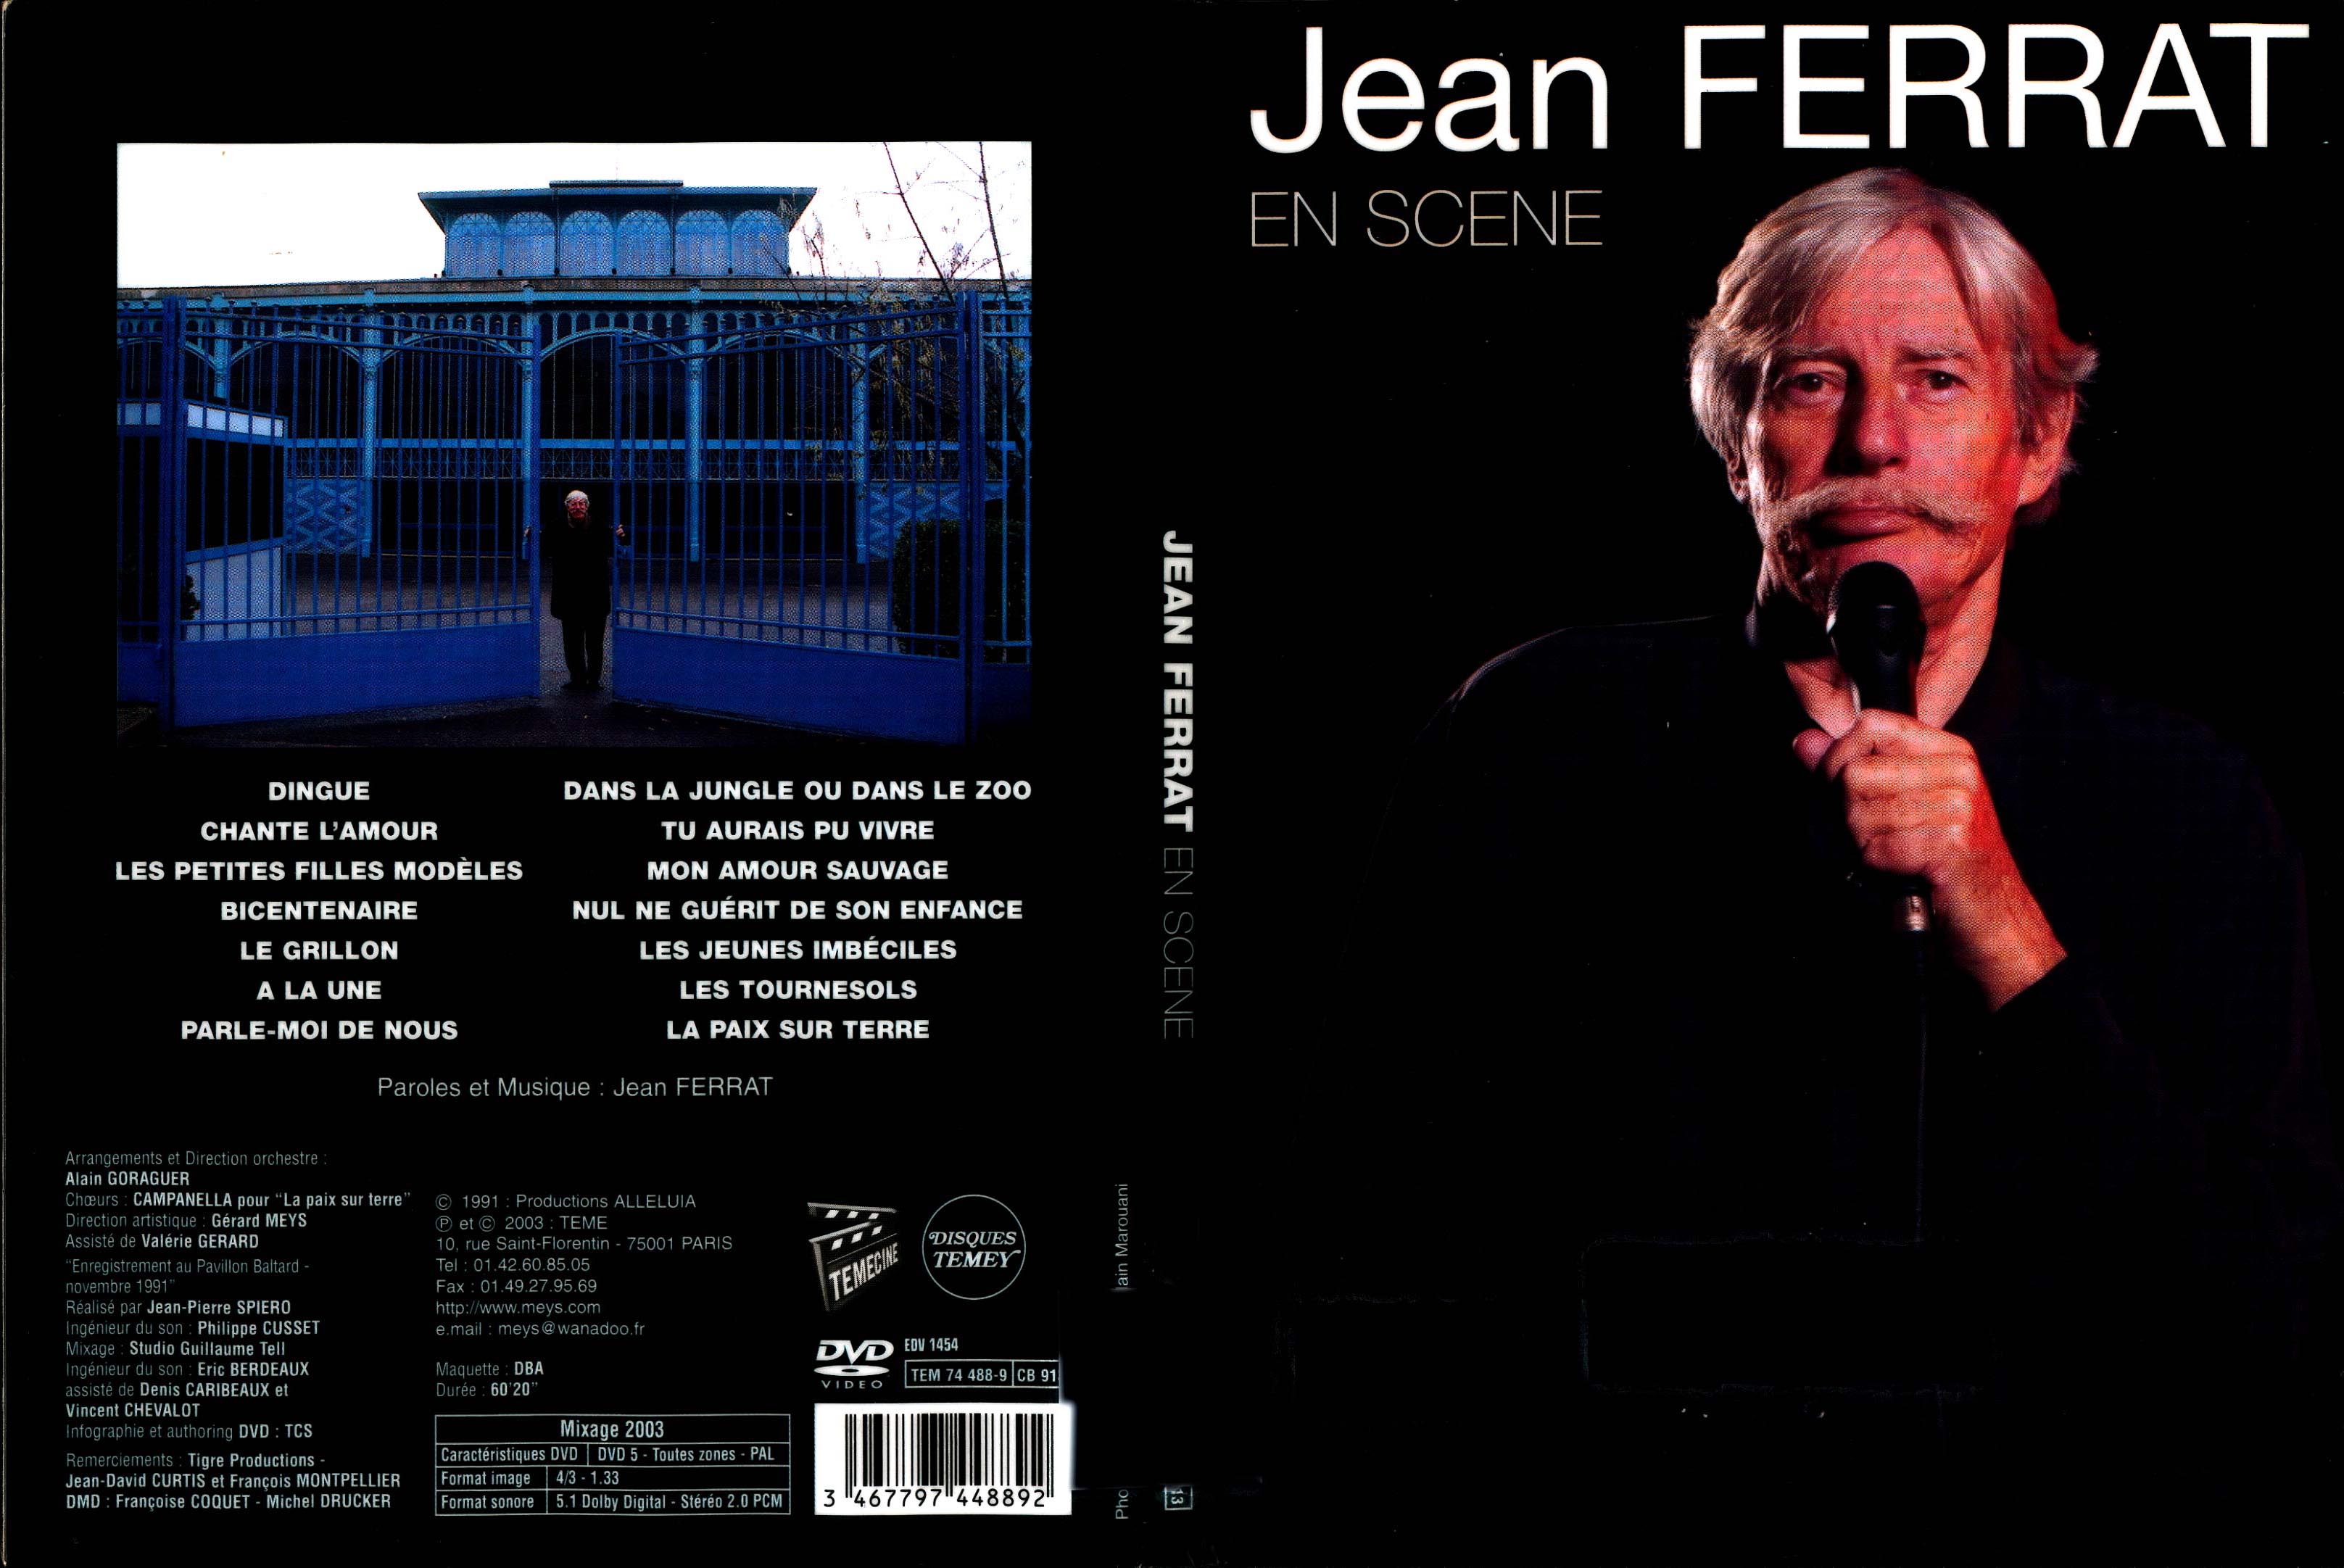 Jaquette DVD Jean Ferrat en scne